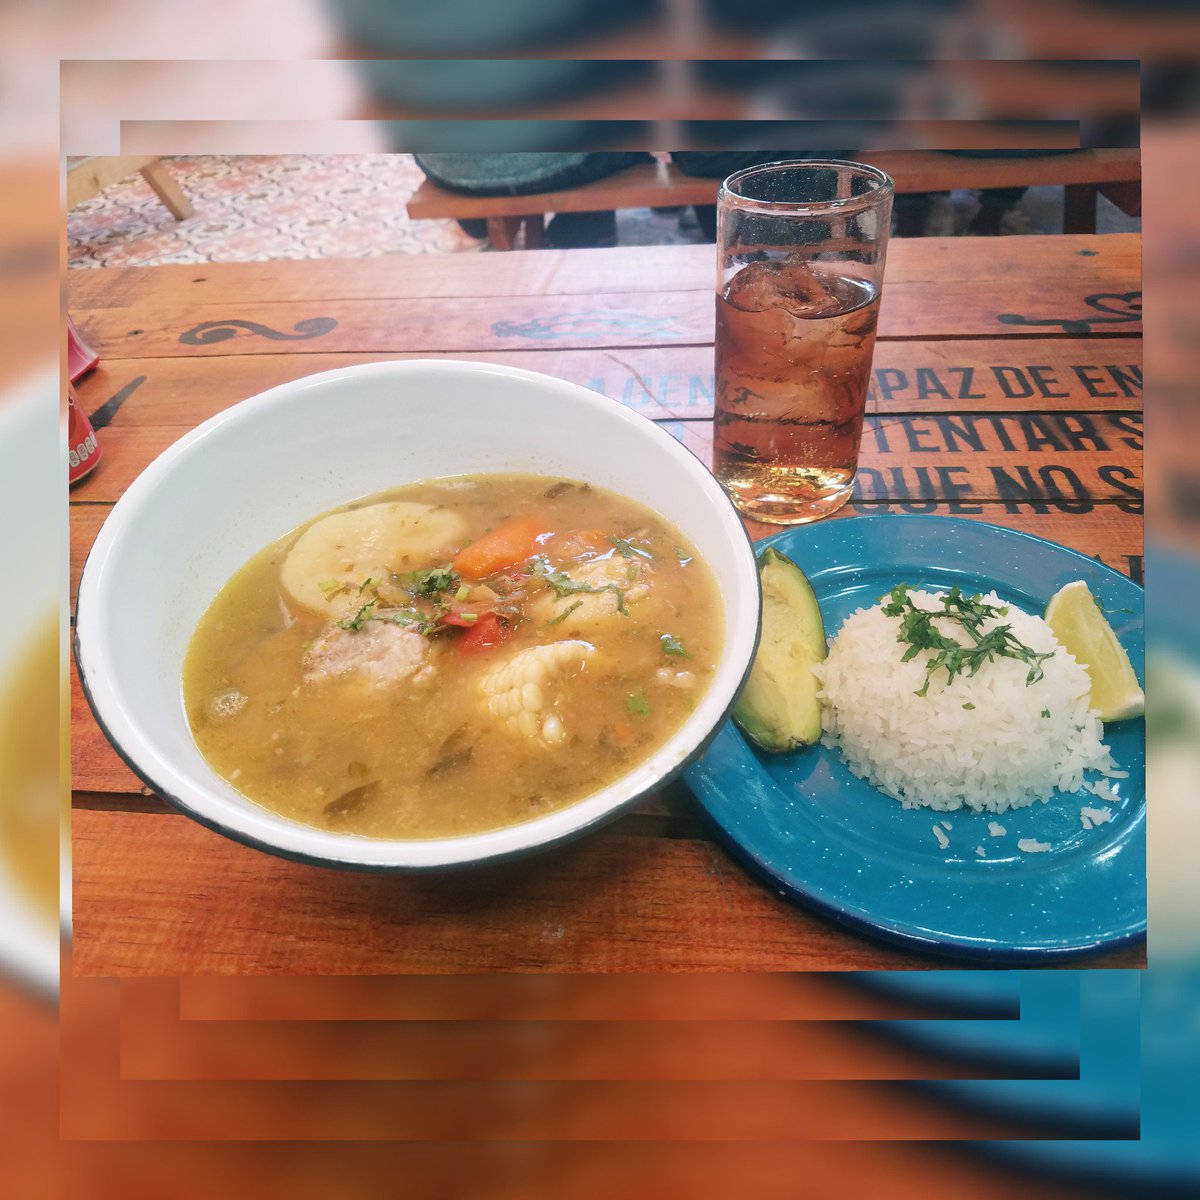 Y por que no??? Para el calor infernal... un #delicioso #sancocho 🤣🤣🤣 #CocinaColombiana
#Valderrama #EntrenandoLoQuemo
 #FelizJueves #foodpic #foodporn